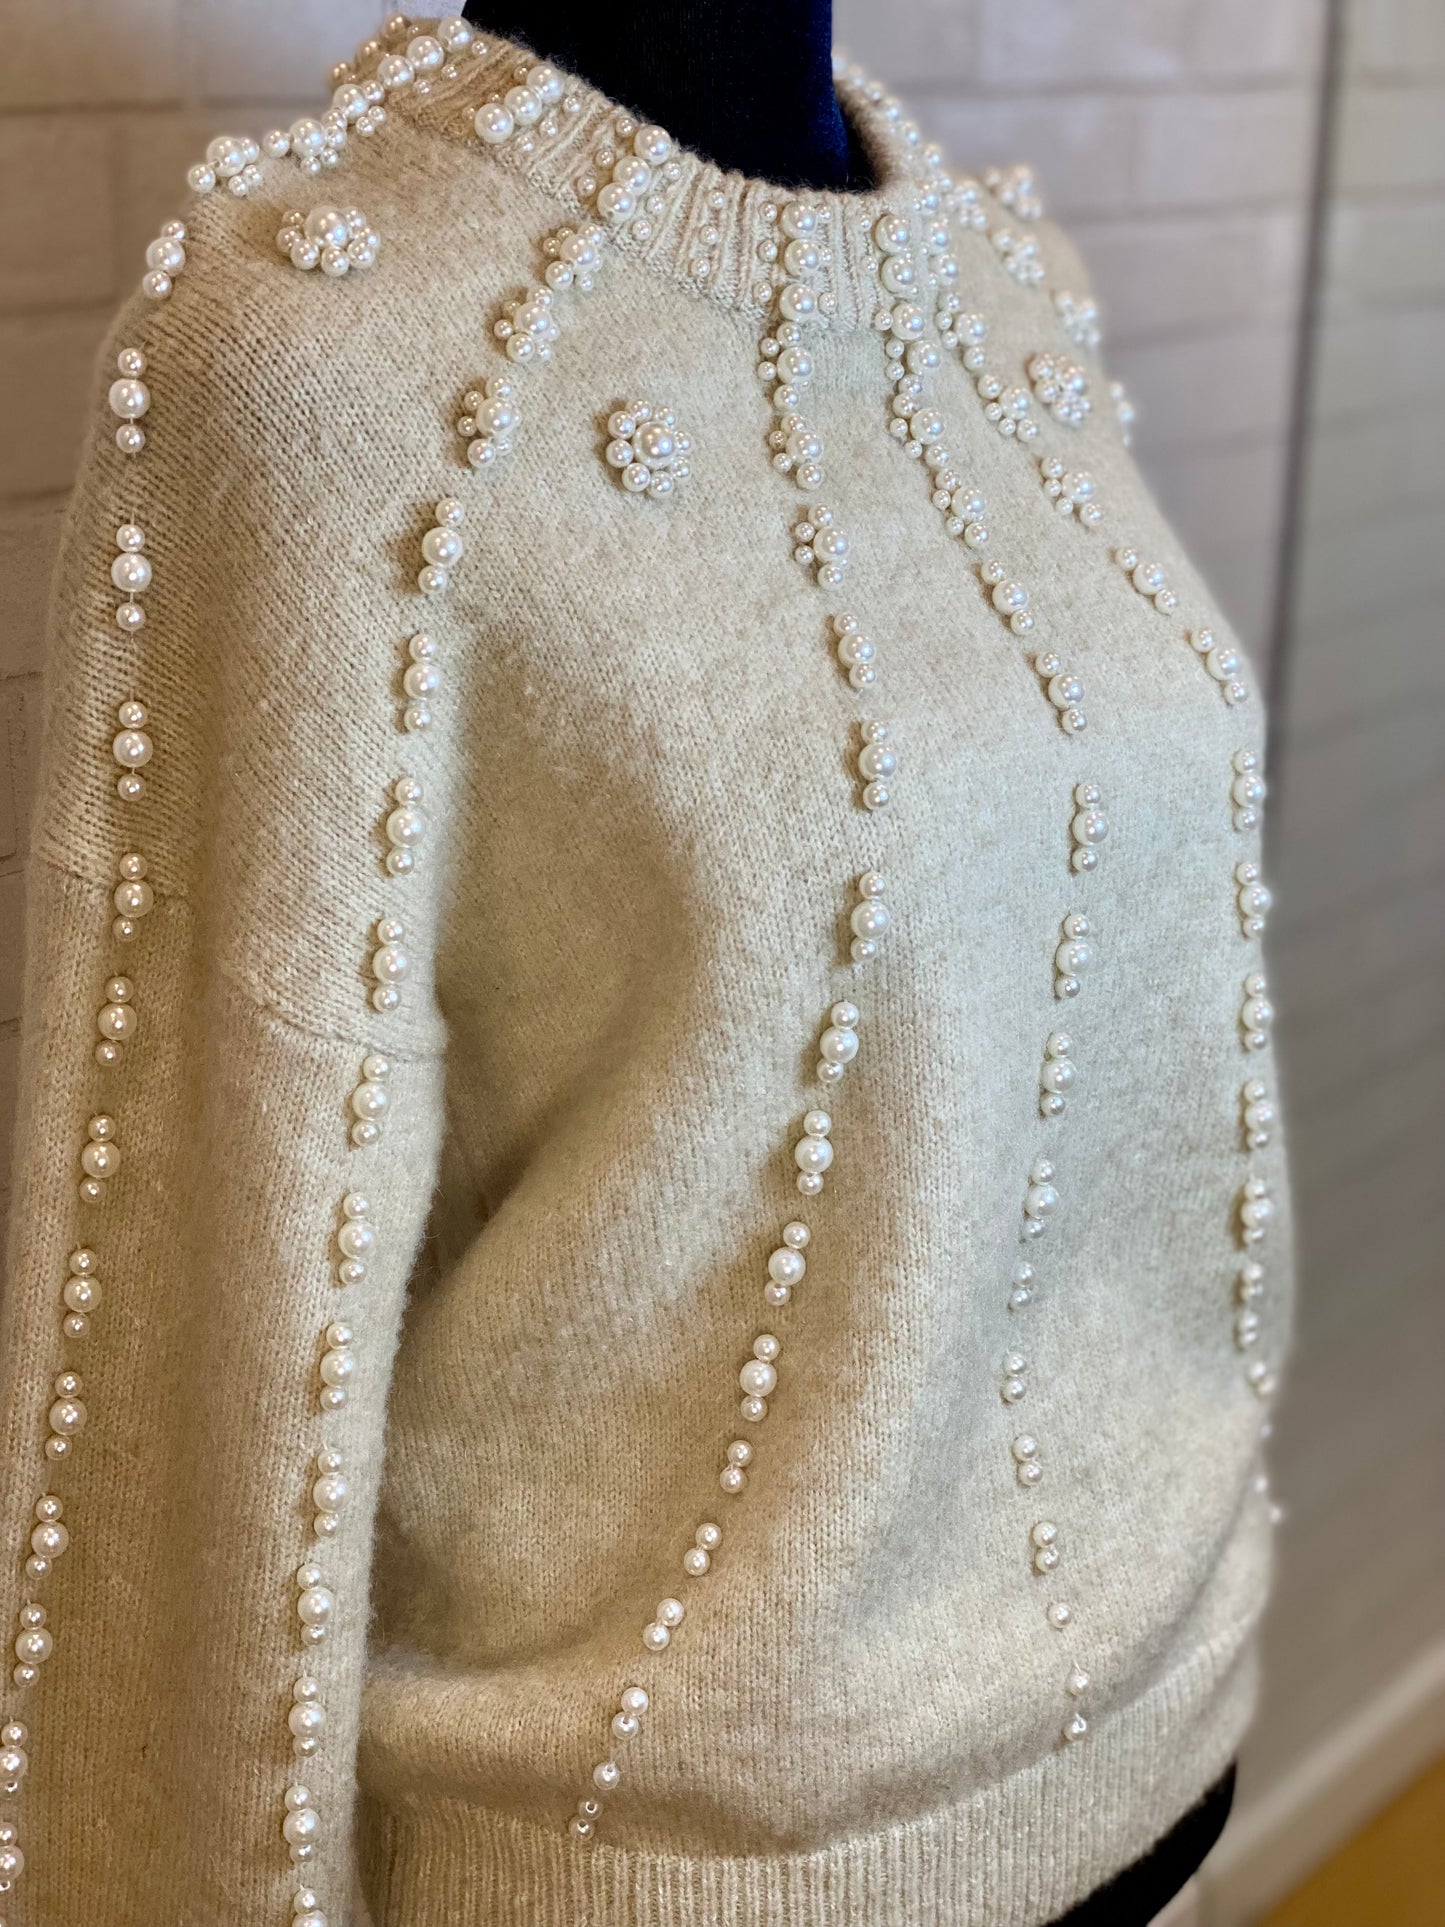 MAJE pearl sweater/ 1-XS